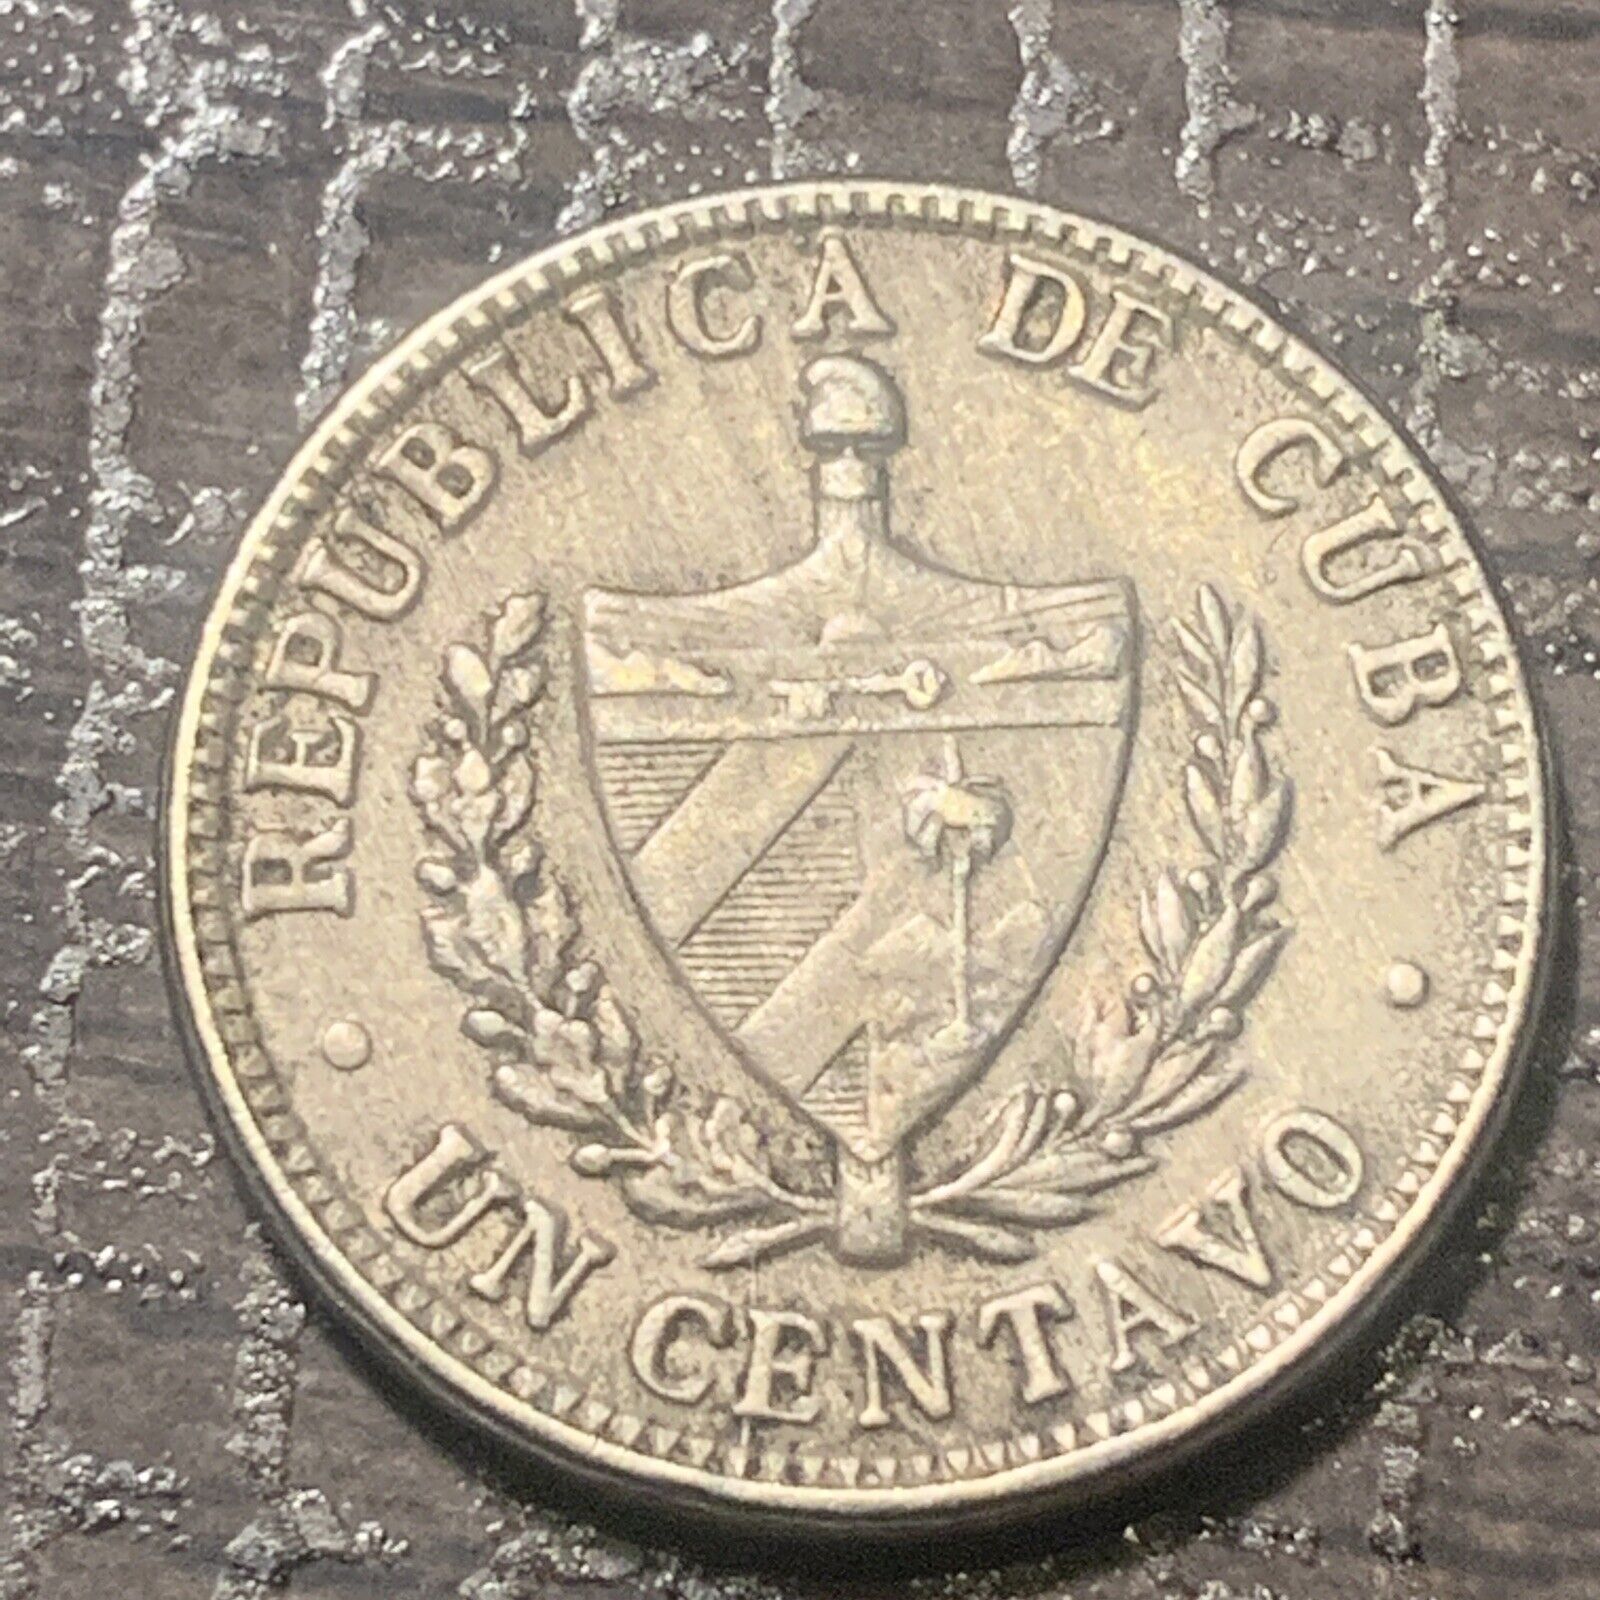 Very Rare Republica De C… Coin 1946